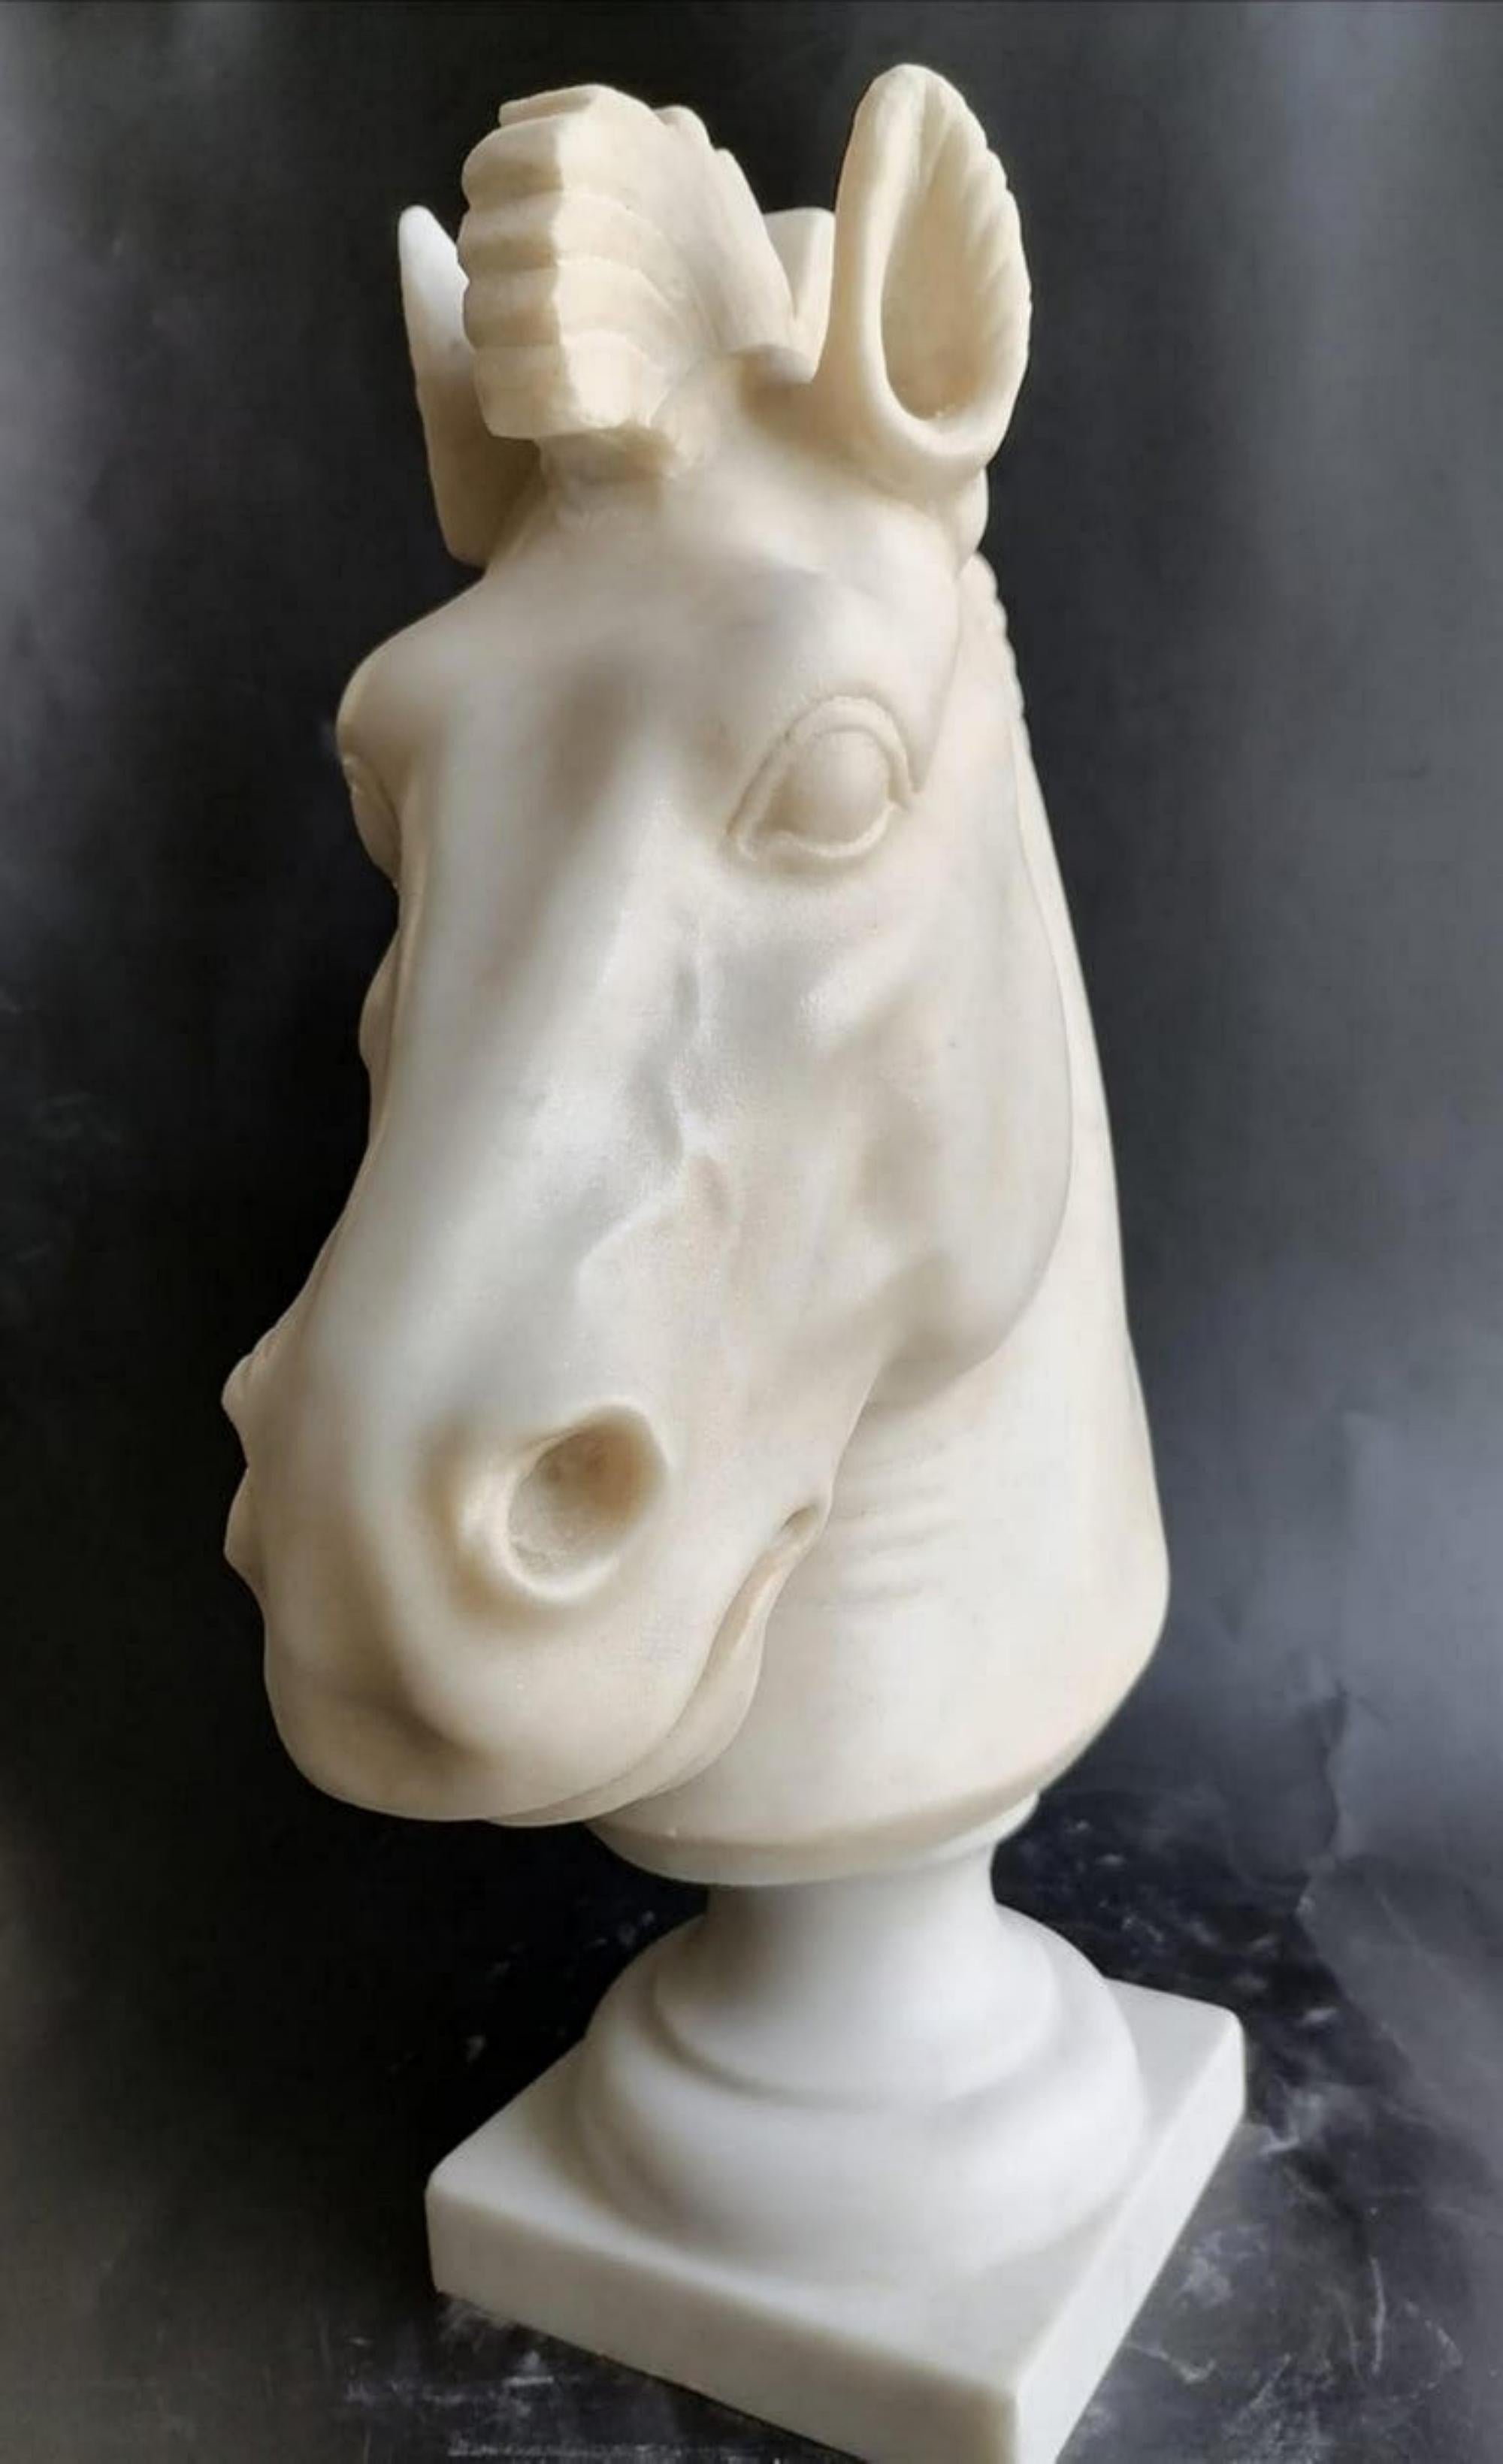 Sculpture de tête de cheval sur marbre blanc de Carrare d'un cheval de style classique posé sur un socle tourné en marbre de Carrare. 
Fin du XIXe siècle.
Dimension : y compris la base : H 40 x 30 x 13 cm. 
Bon état - utilisé avec de petits signes